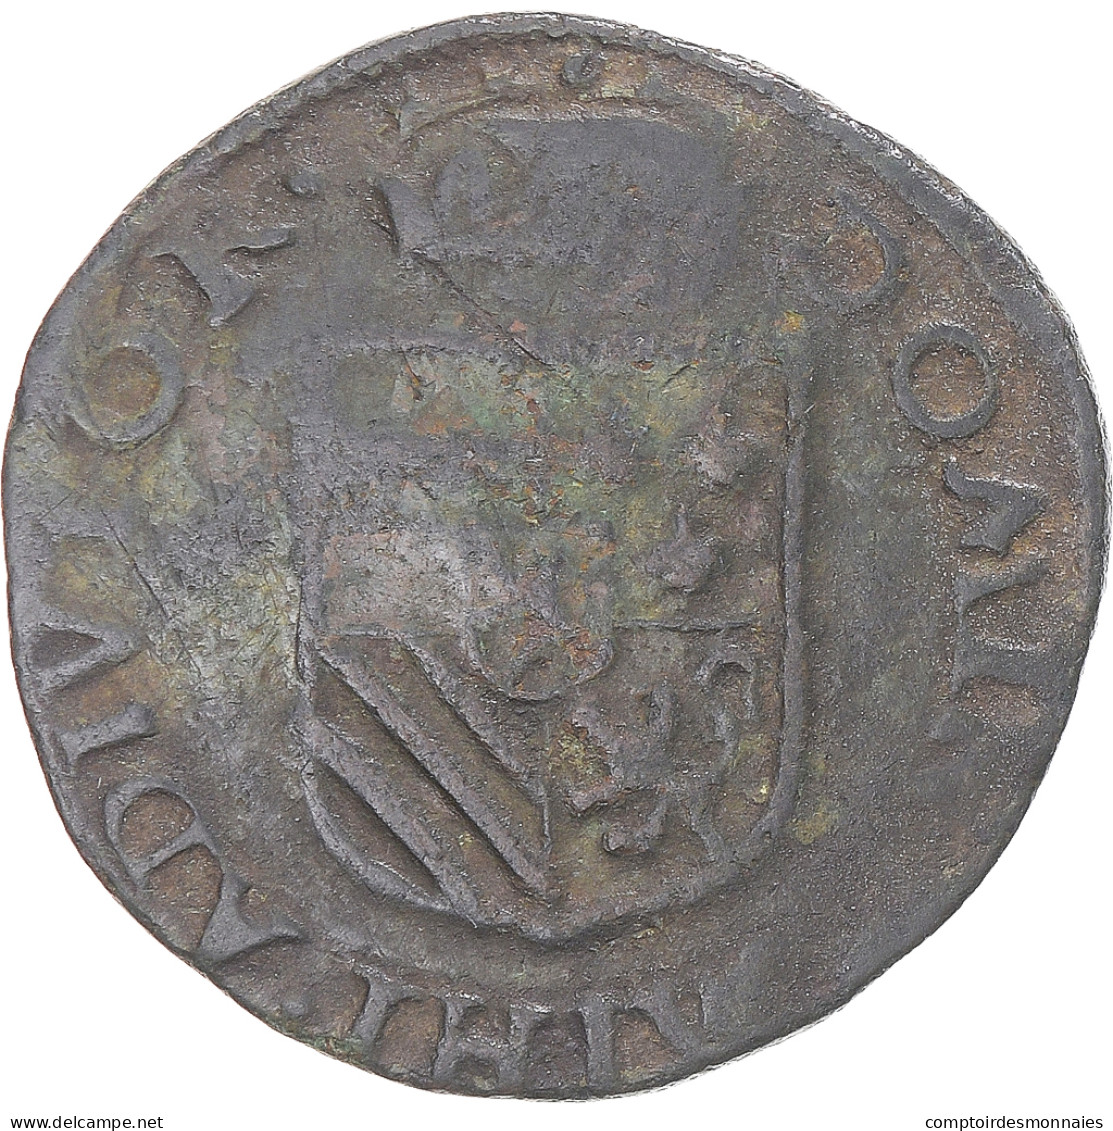 Monnaie, Pays-Bas Espagnols, Philippe II, Liard, 1591, Maastricht, TTB, Cuivre - …-1795 : Periodo Antico